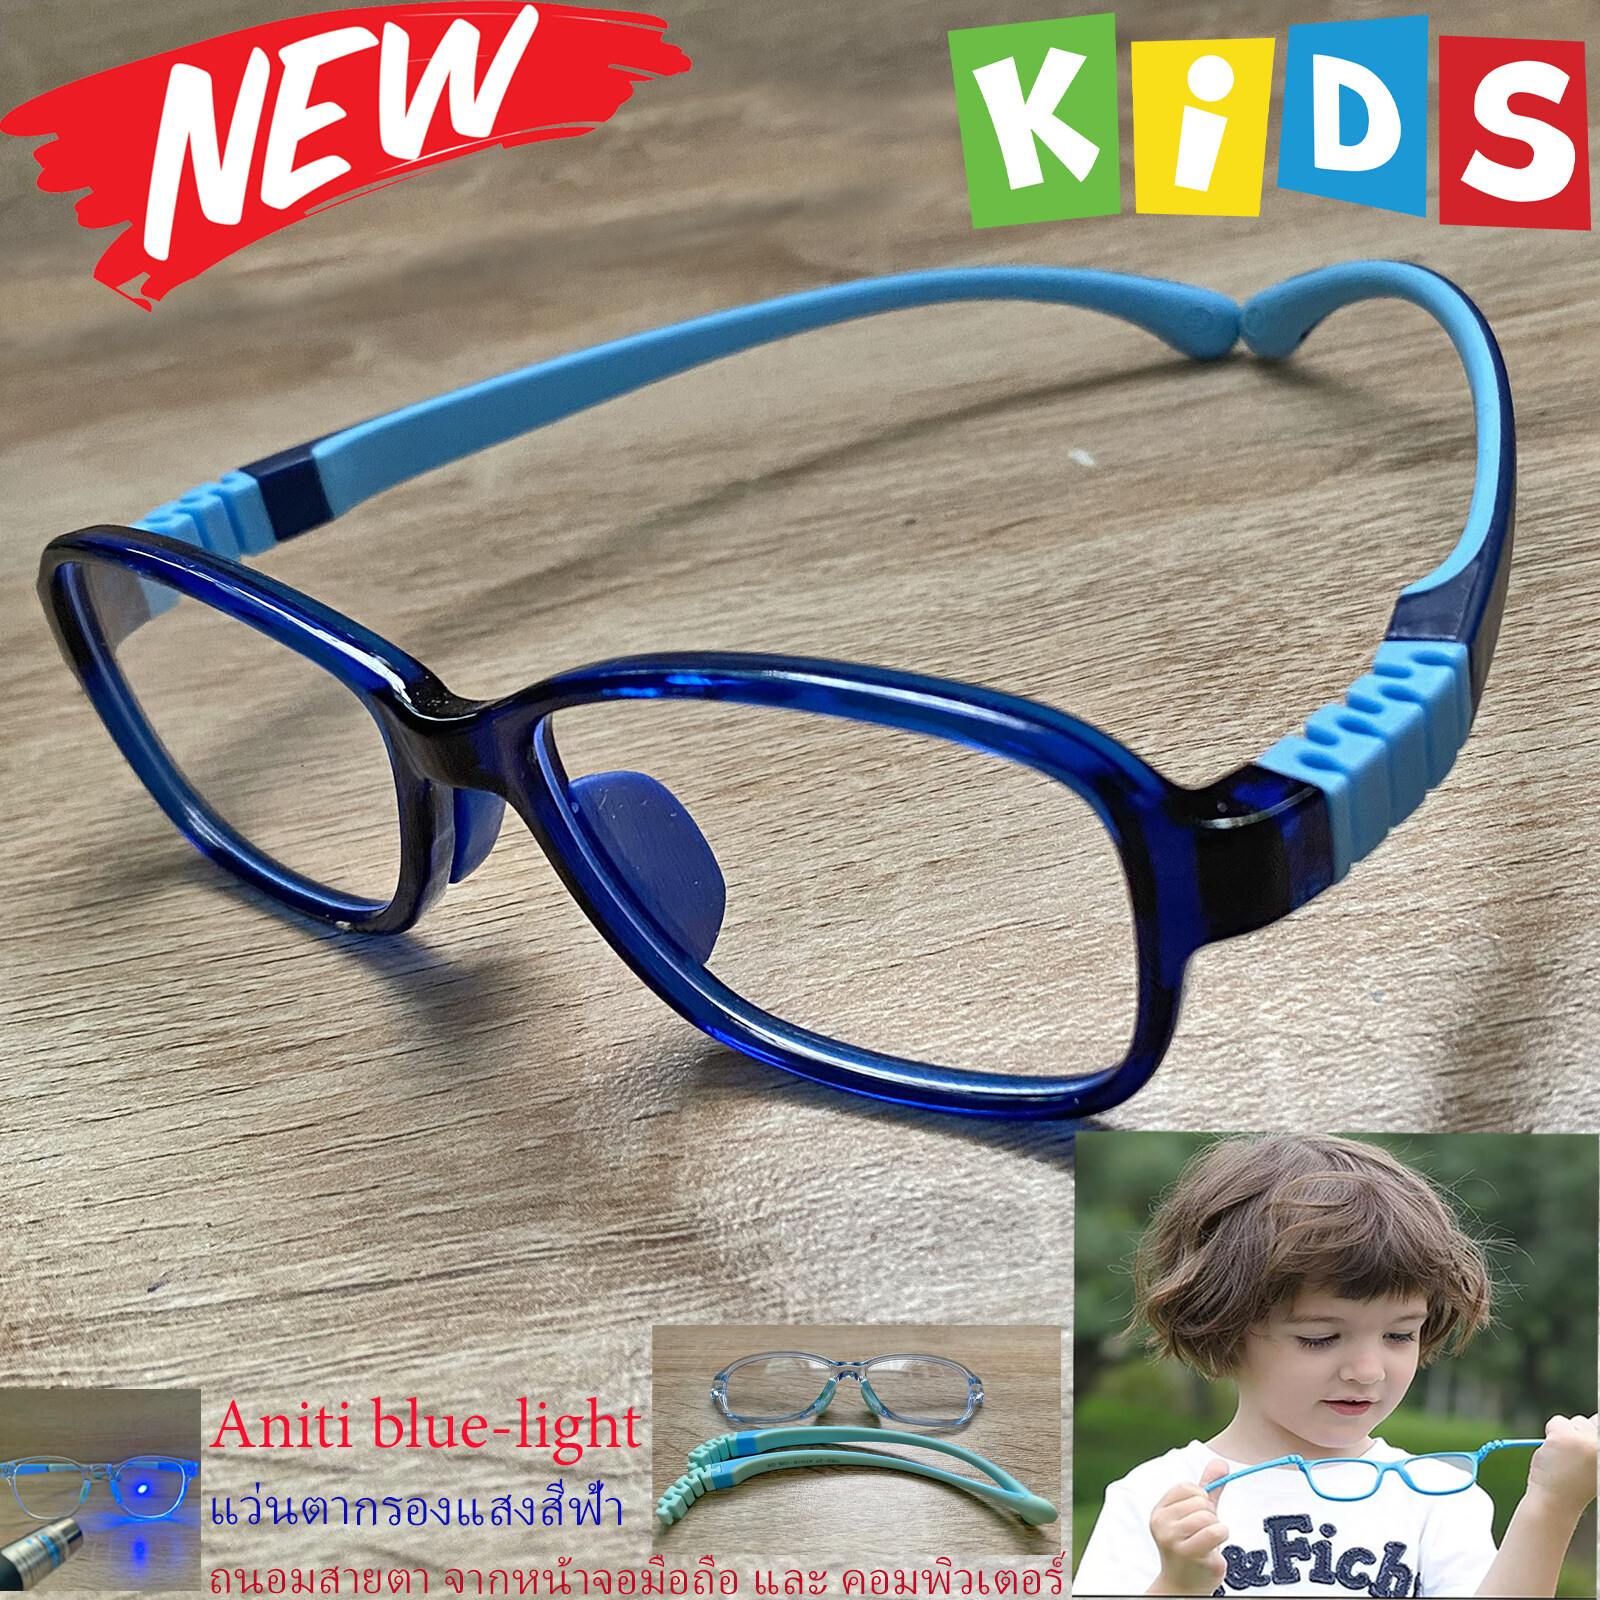 กรอบแว่นตาเด็ก กรองแสง สีฟ้า blue block แว่นเด็ก บลูบล็อค รุ่น 27 สีน้ำเงิน ขาข้อต่อยืดหยุ่น ถอดขาเปลี่ยนได้ วัสดุTR90 เหมาะสำหรับเลนส์สายตา